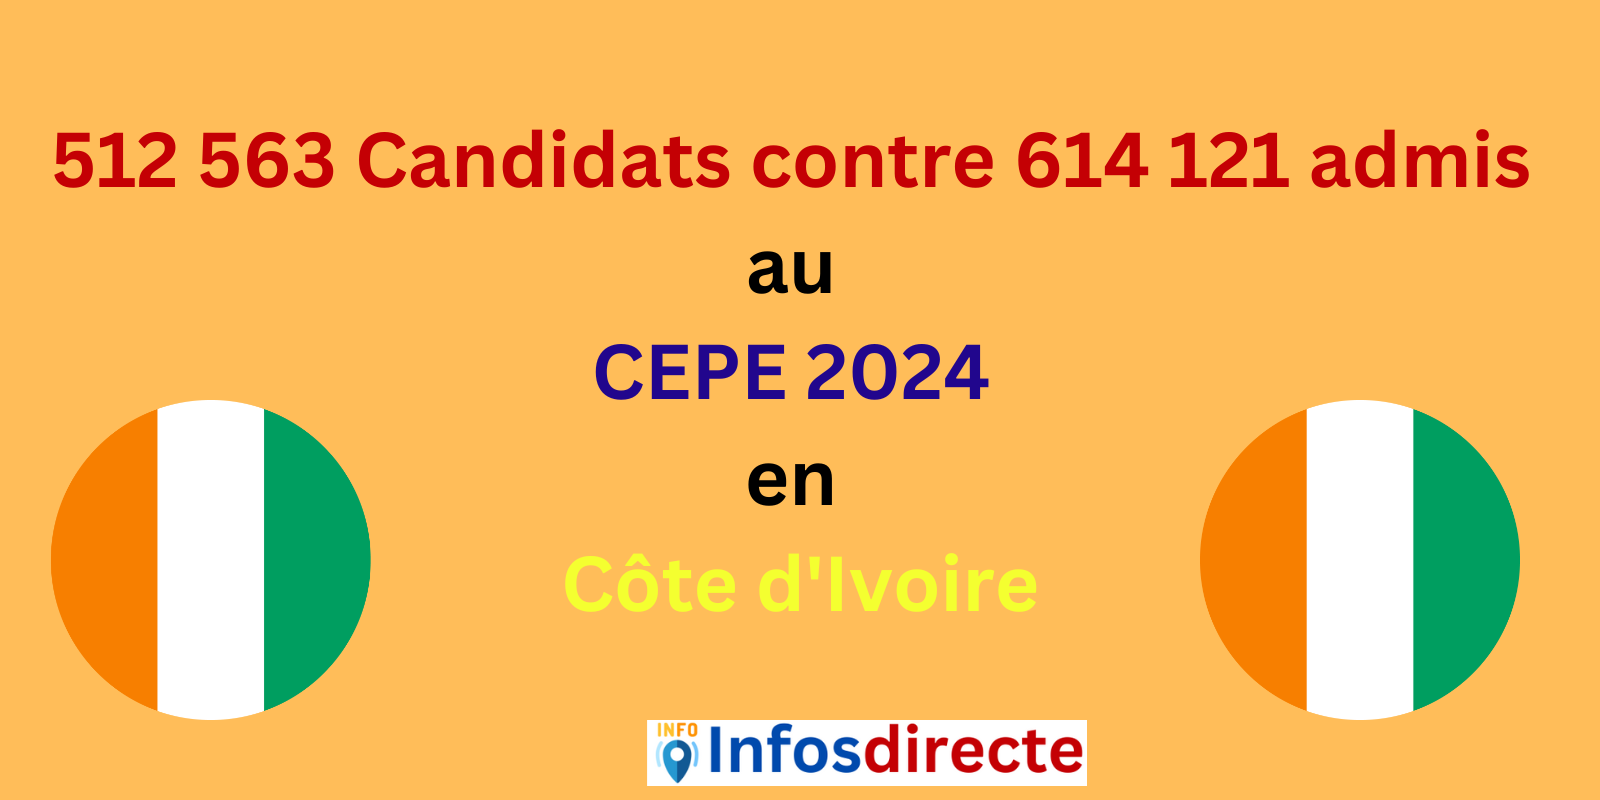 512 563 Candidats contre 614 121 admis au CEPE 2024 en Côte d'Ivoire